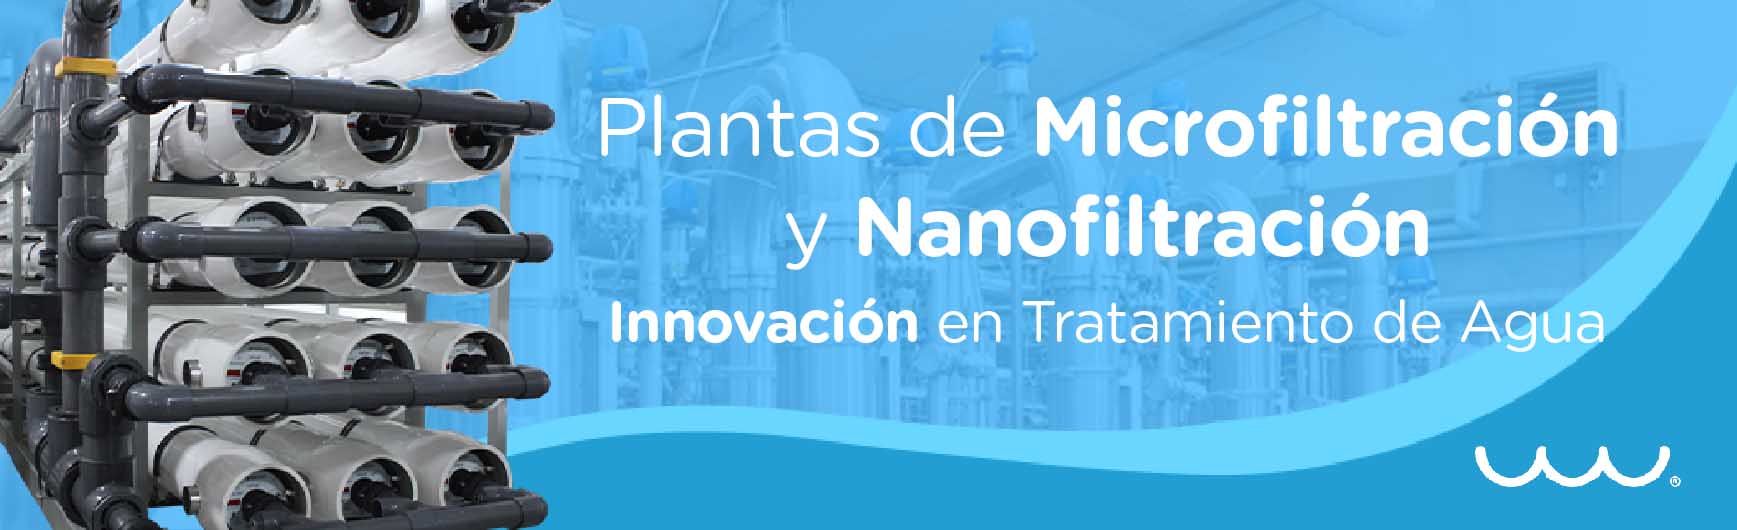 Plantas de Microfiltración y Nanofiltración: Innovación en Tratamiento de Agua